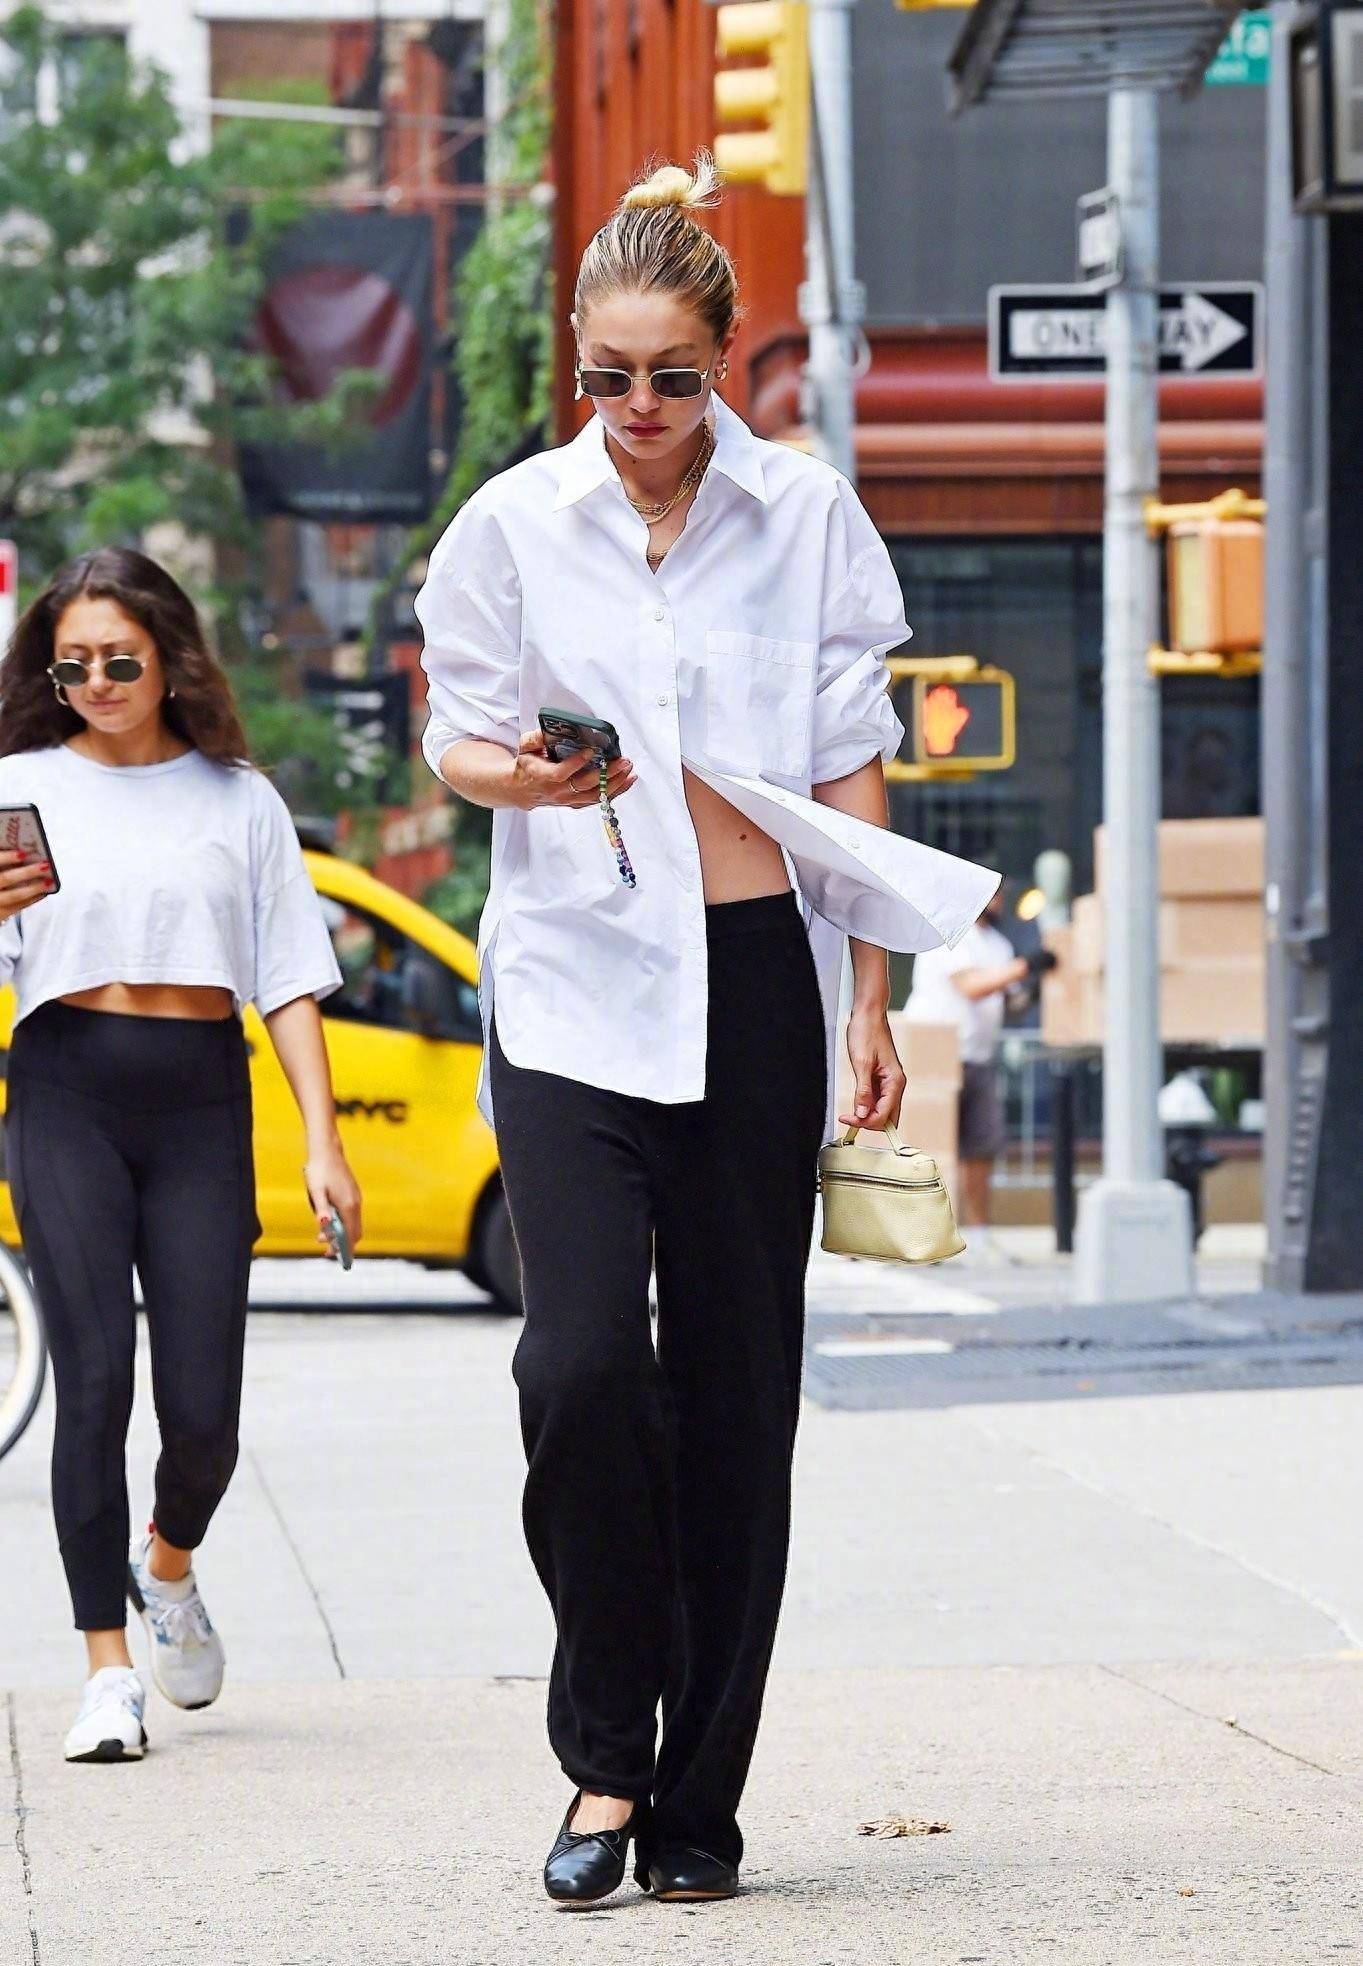 gigi hadid现身纽约街头:白衬衫 黑裤,清新时尚